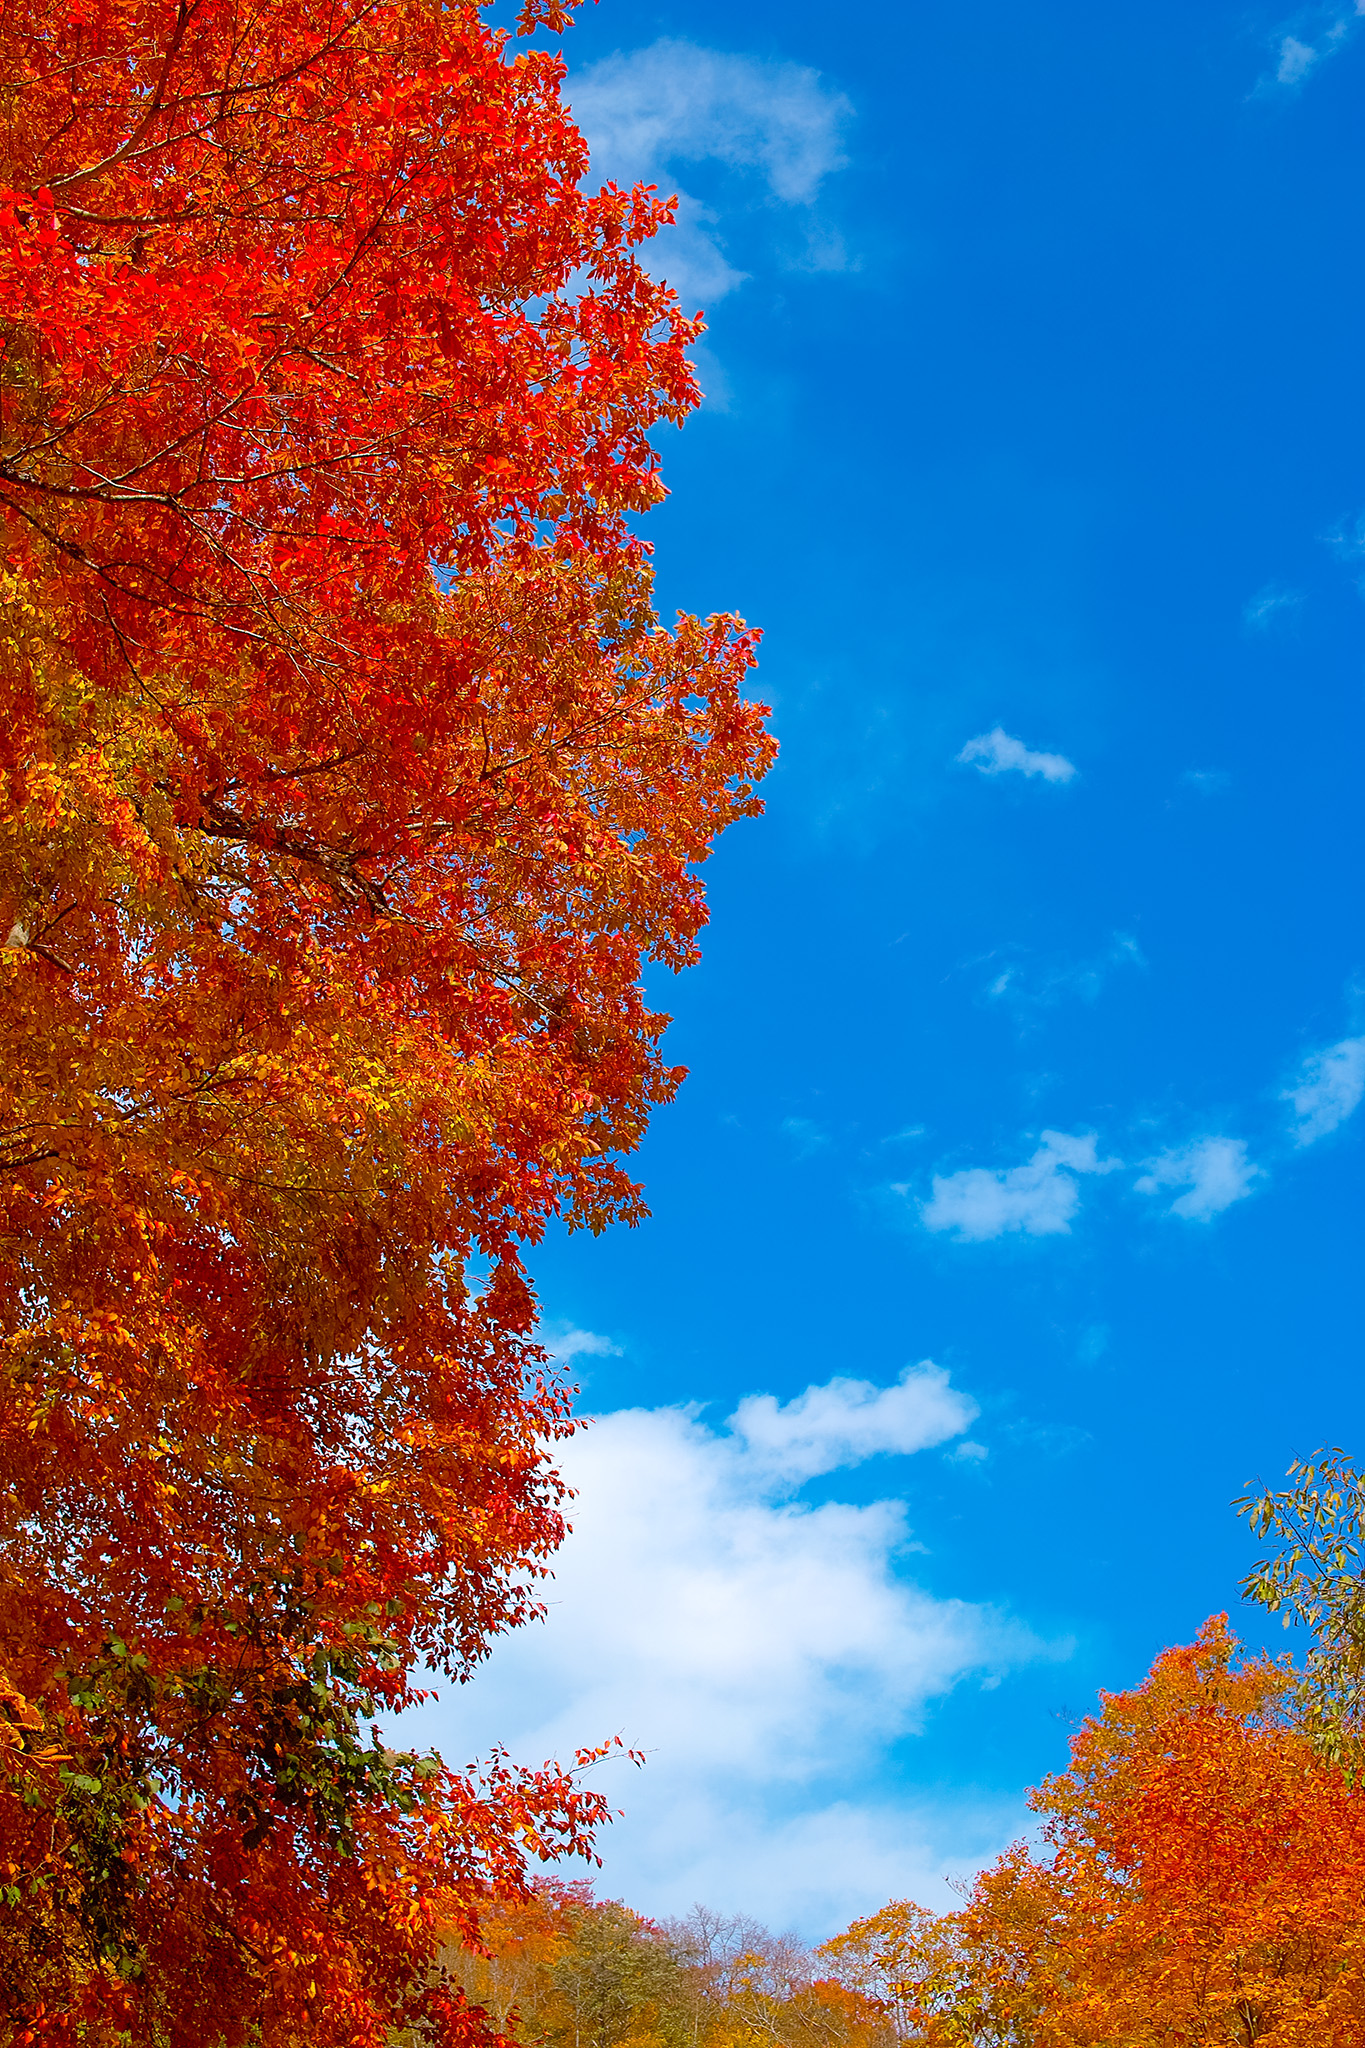 心に強く訴える秋 風景 フリー イラスト画像